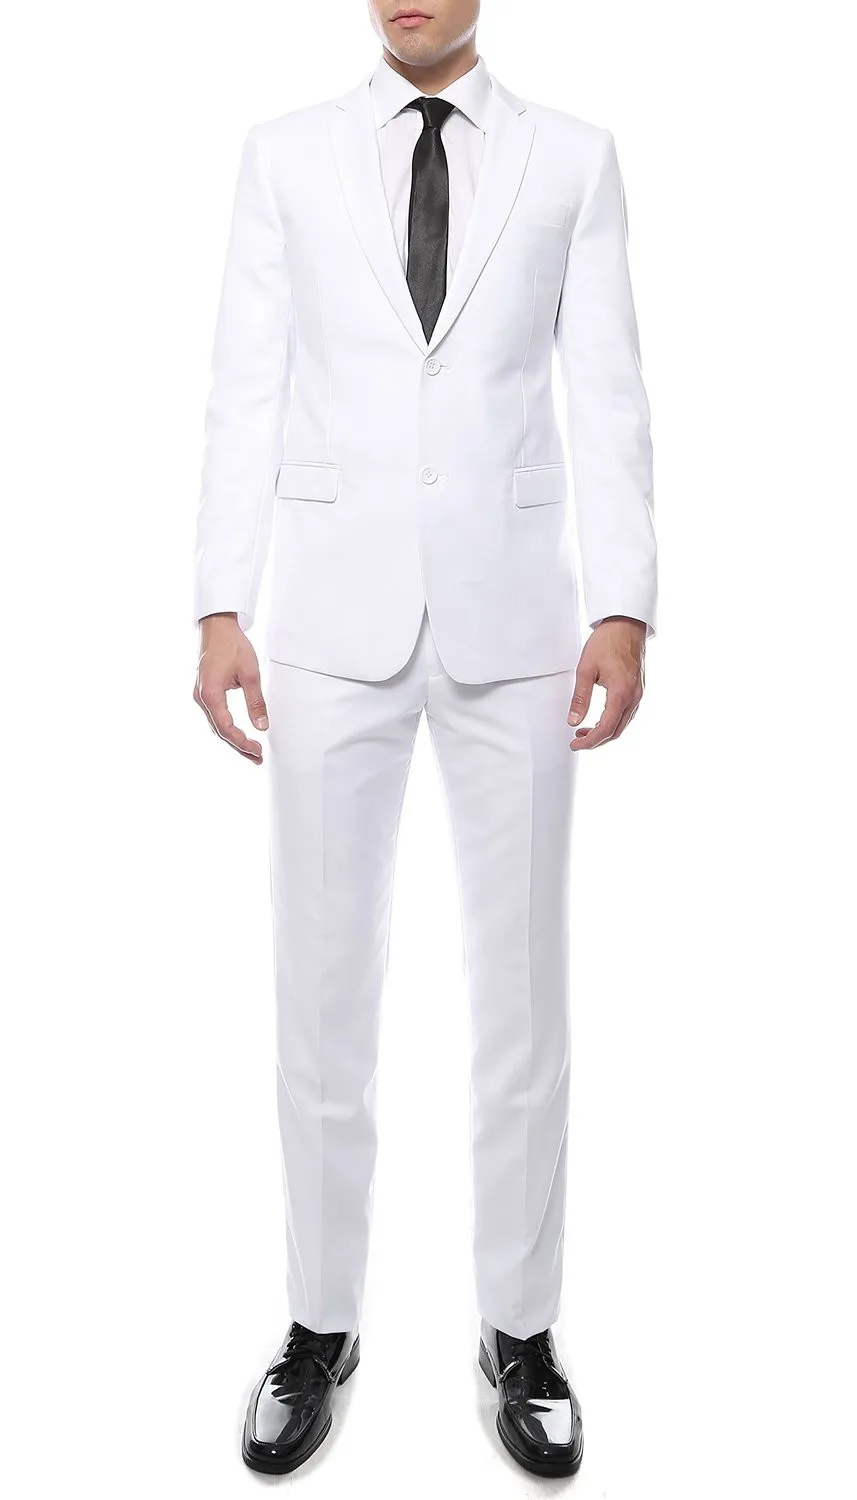 2019 индивидуальный заказ для мужчин 2 кнопки Премиум Slim Fit Бизнес костюм дружки Свадебные/выпускные костюмы (куртка + брюки для девочек)